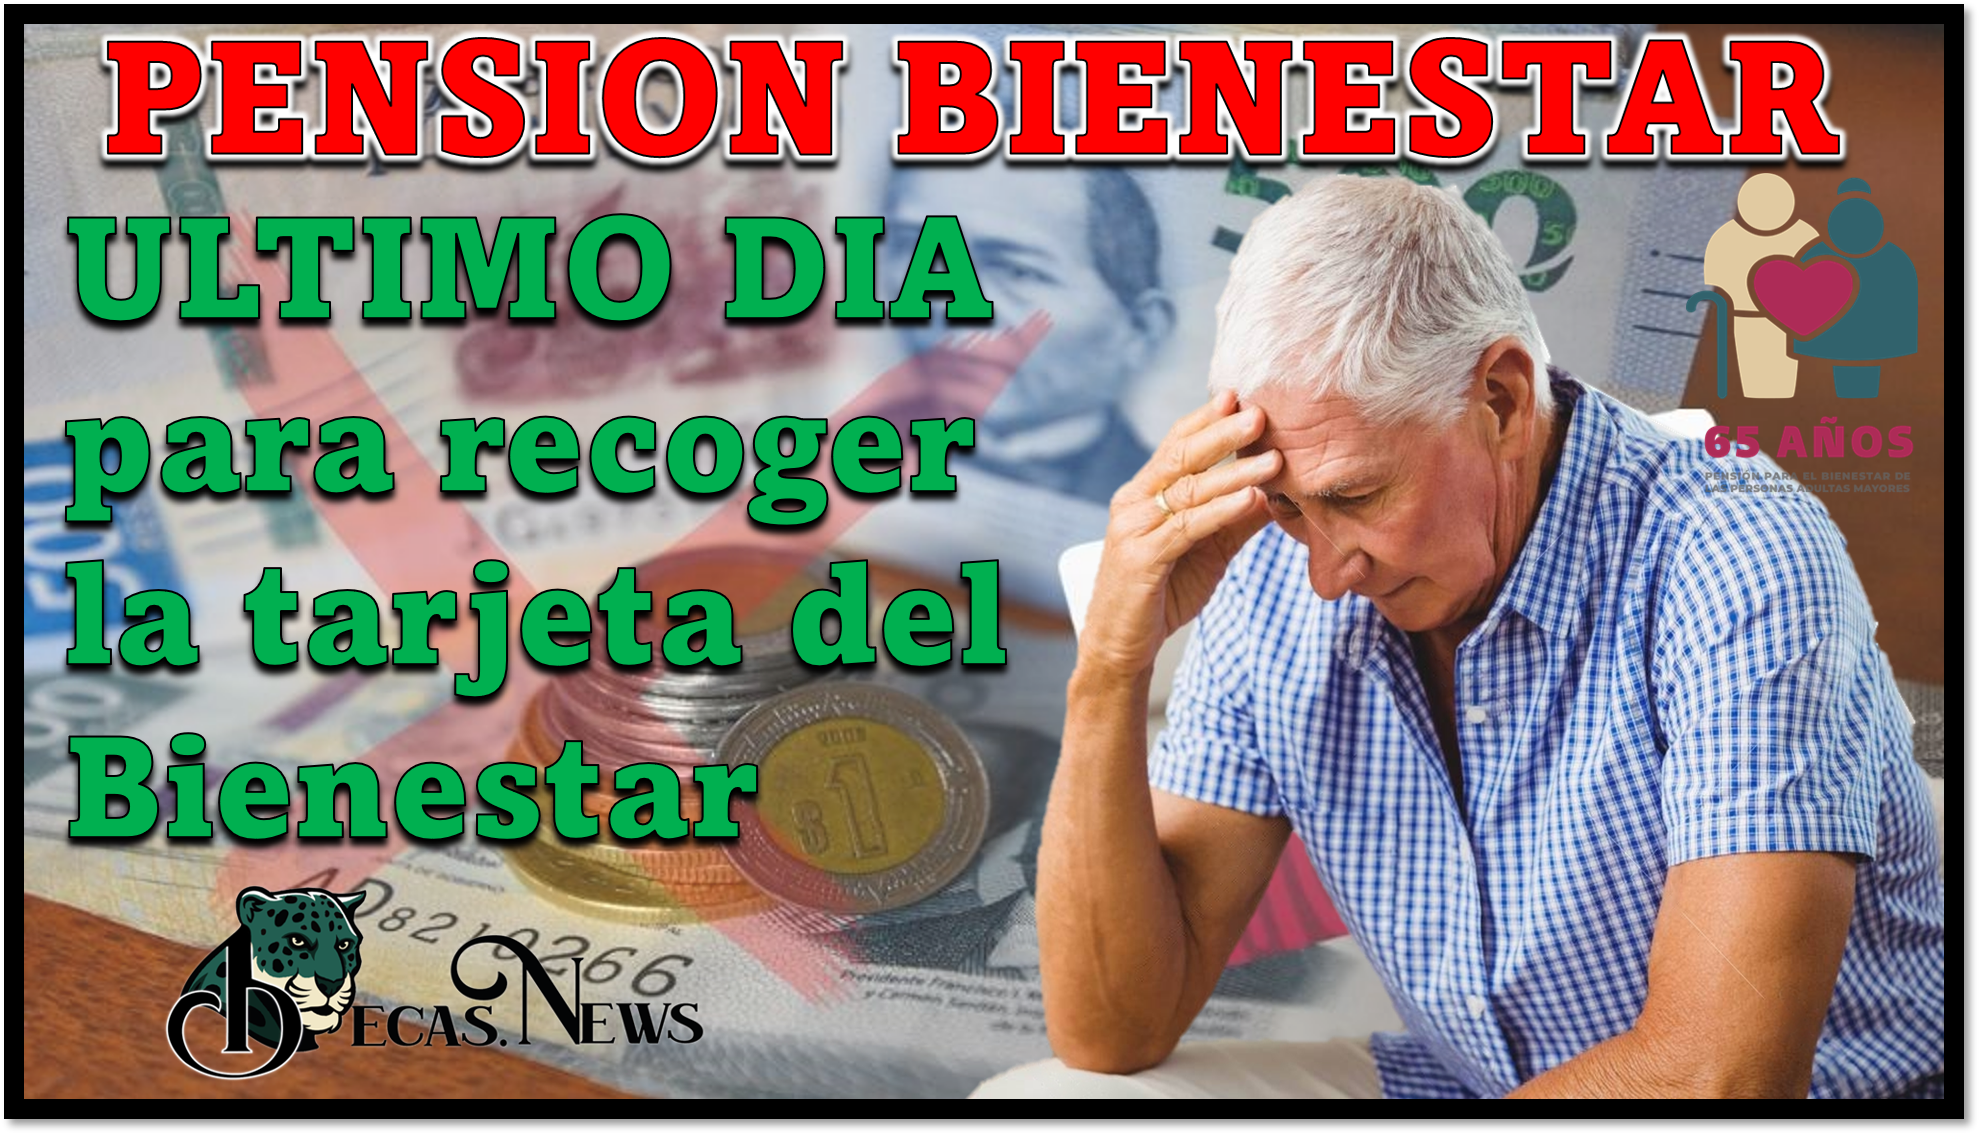 Pensión Bienestar: ULTIMO DIA para recoger la tarjeta del Bienestar